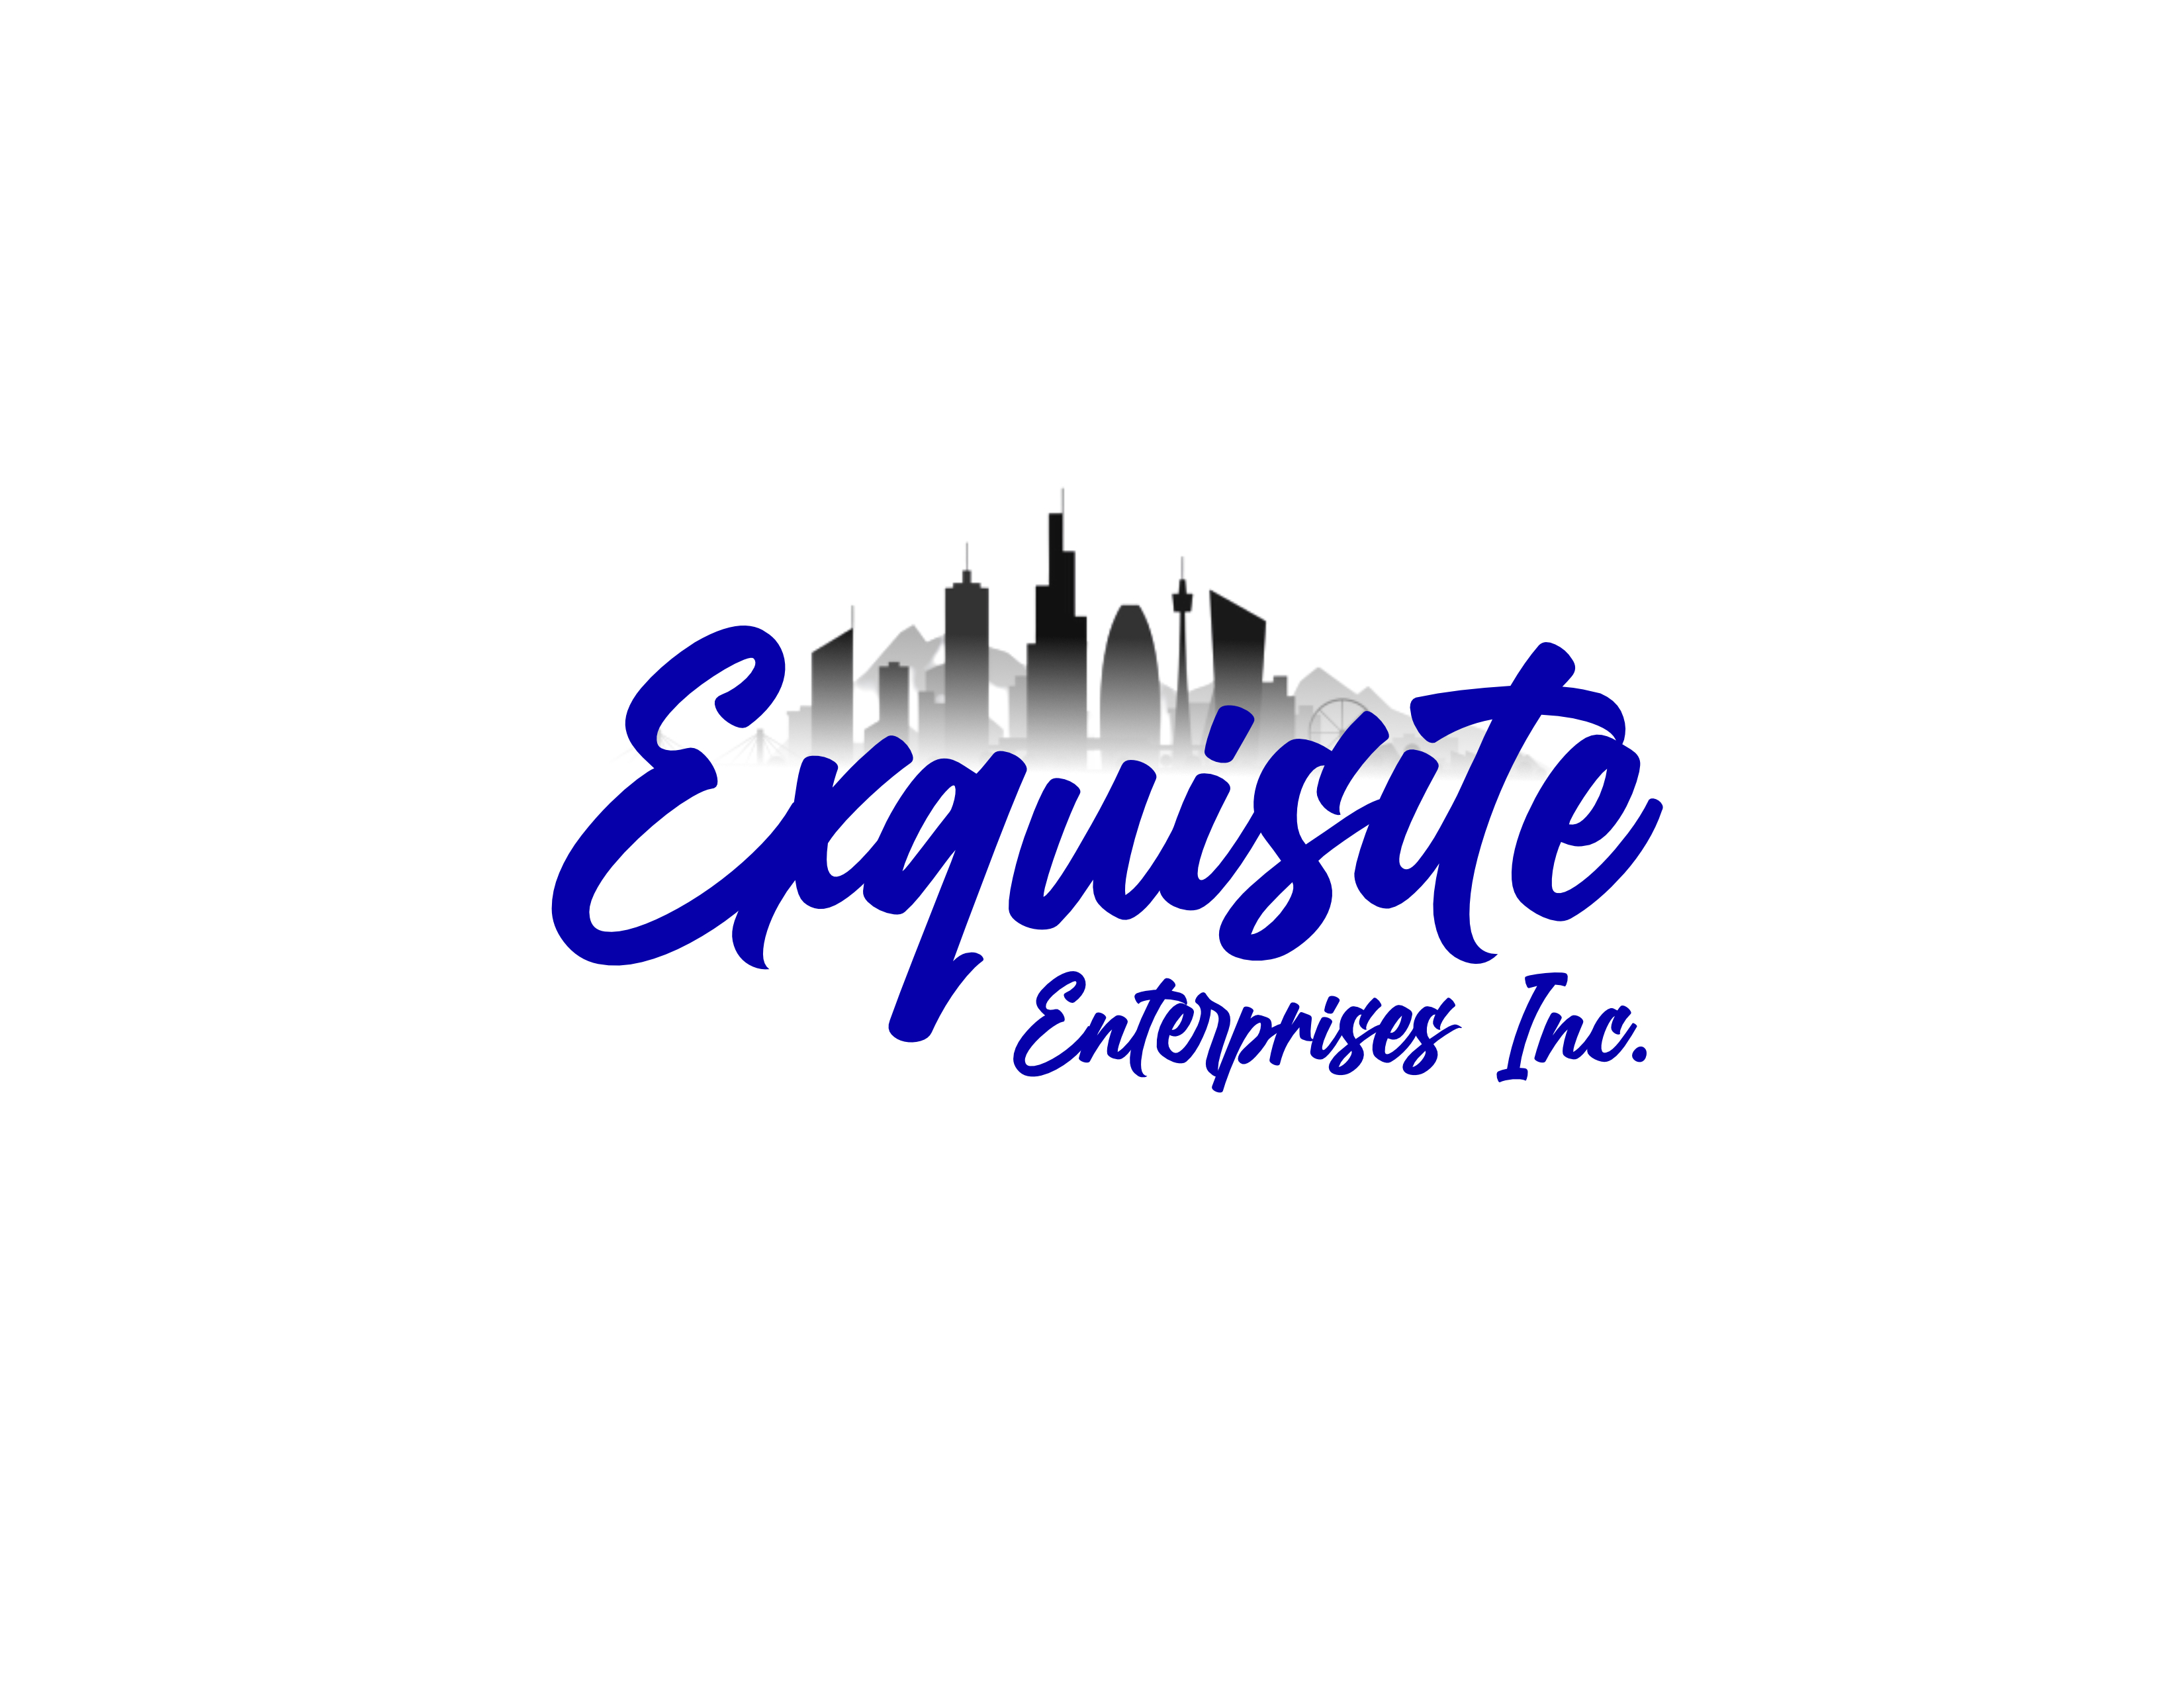 Exquisite Enterprises Inc